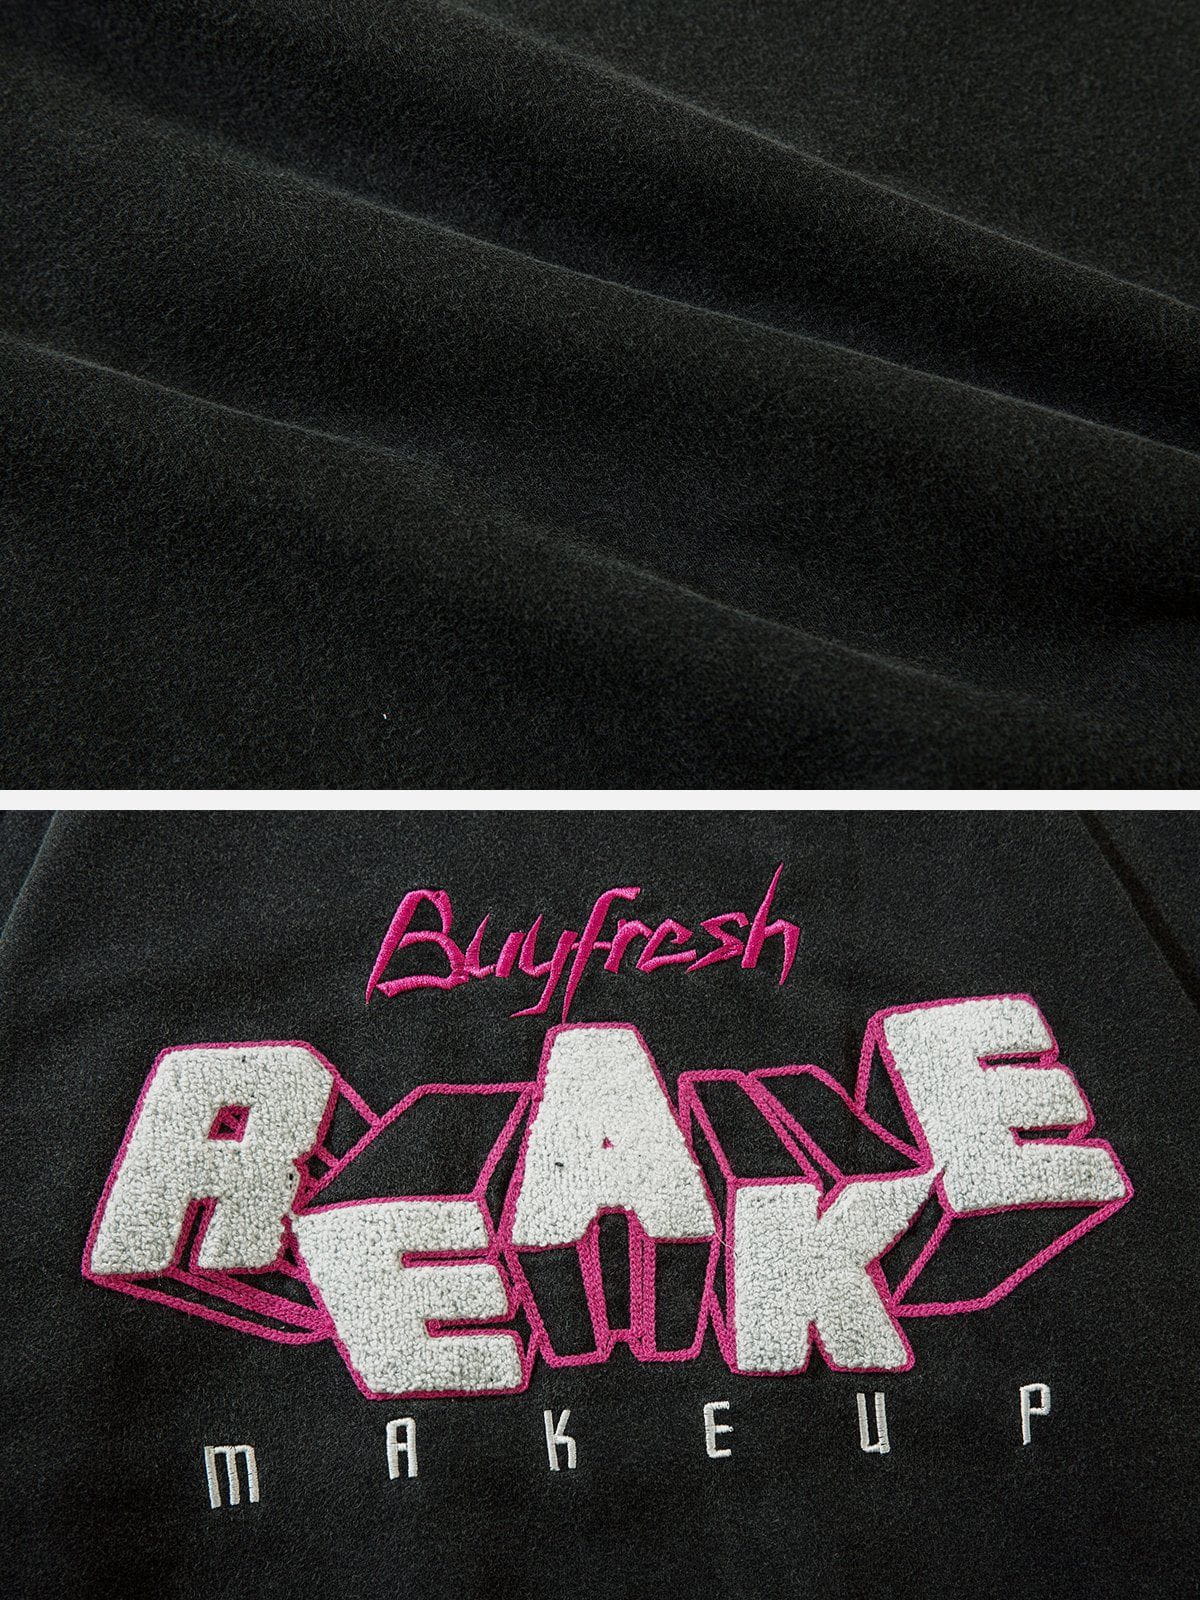 LUXENFY™ - "REAKE" Print Sweatshirt luxenfy.com